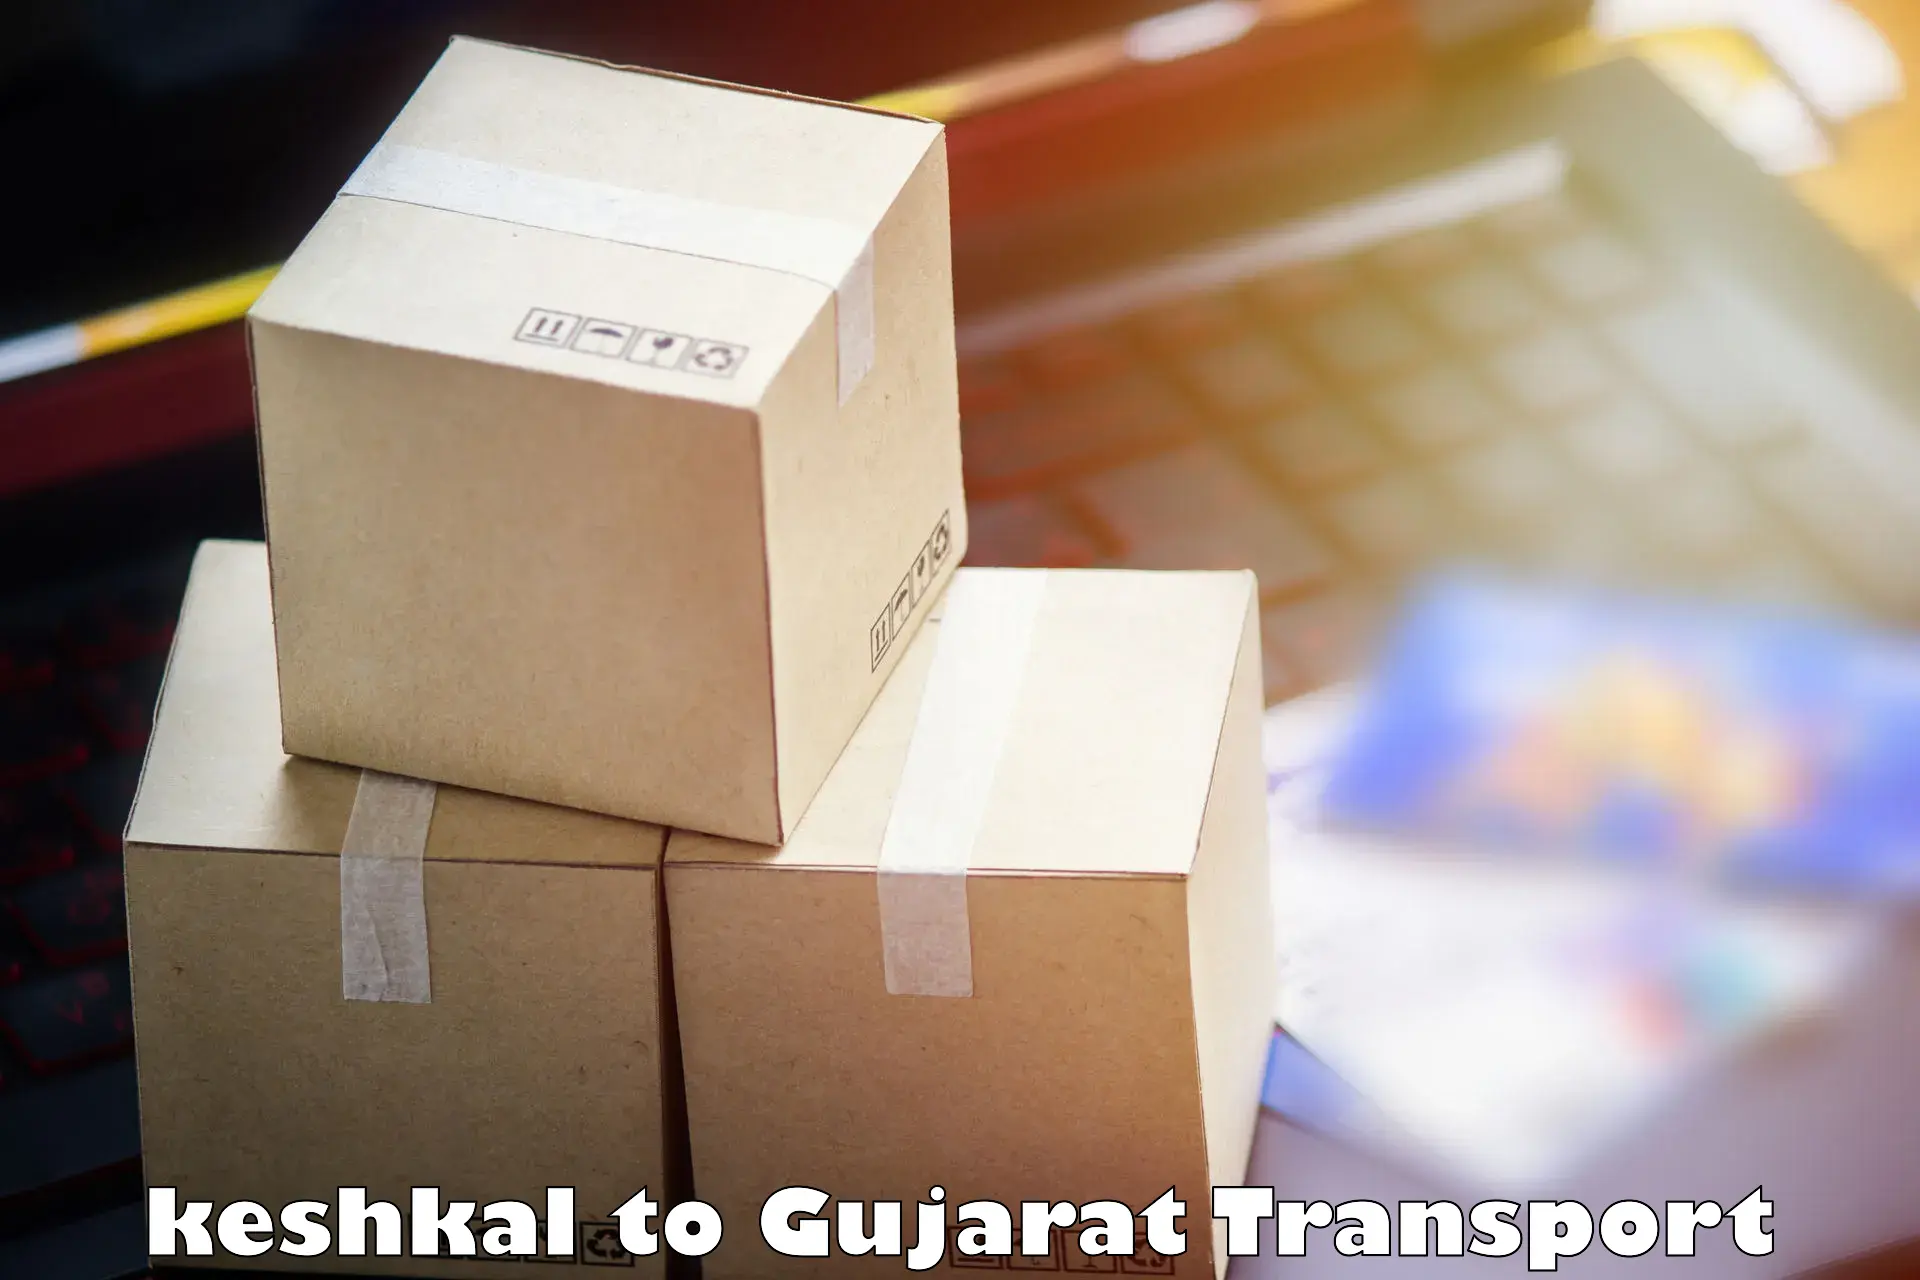 Vehicle parcel service keshkal to Kadi